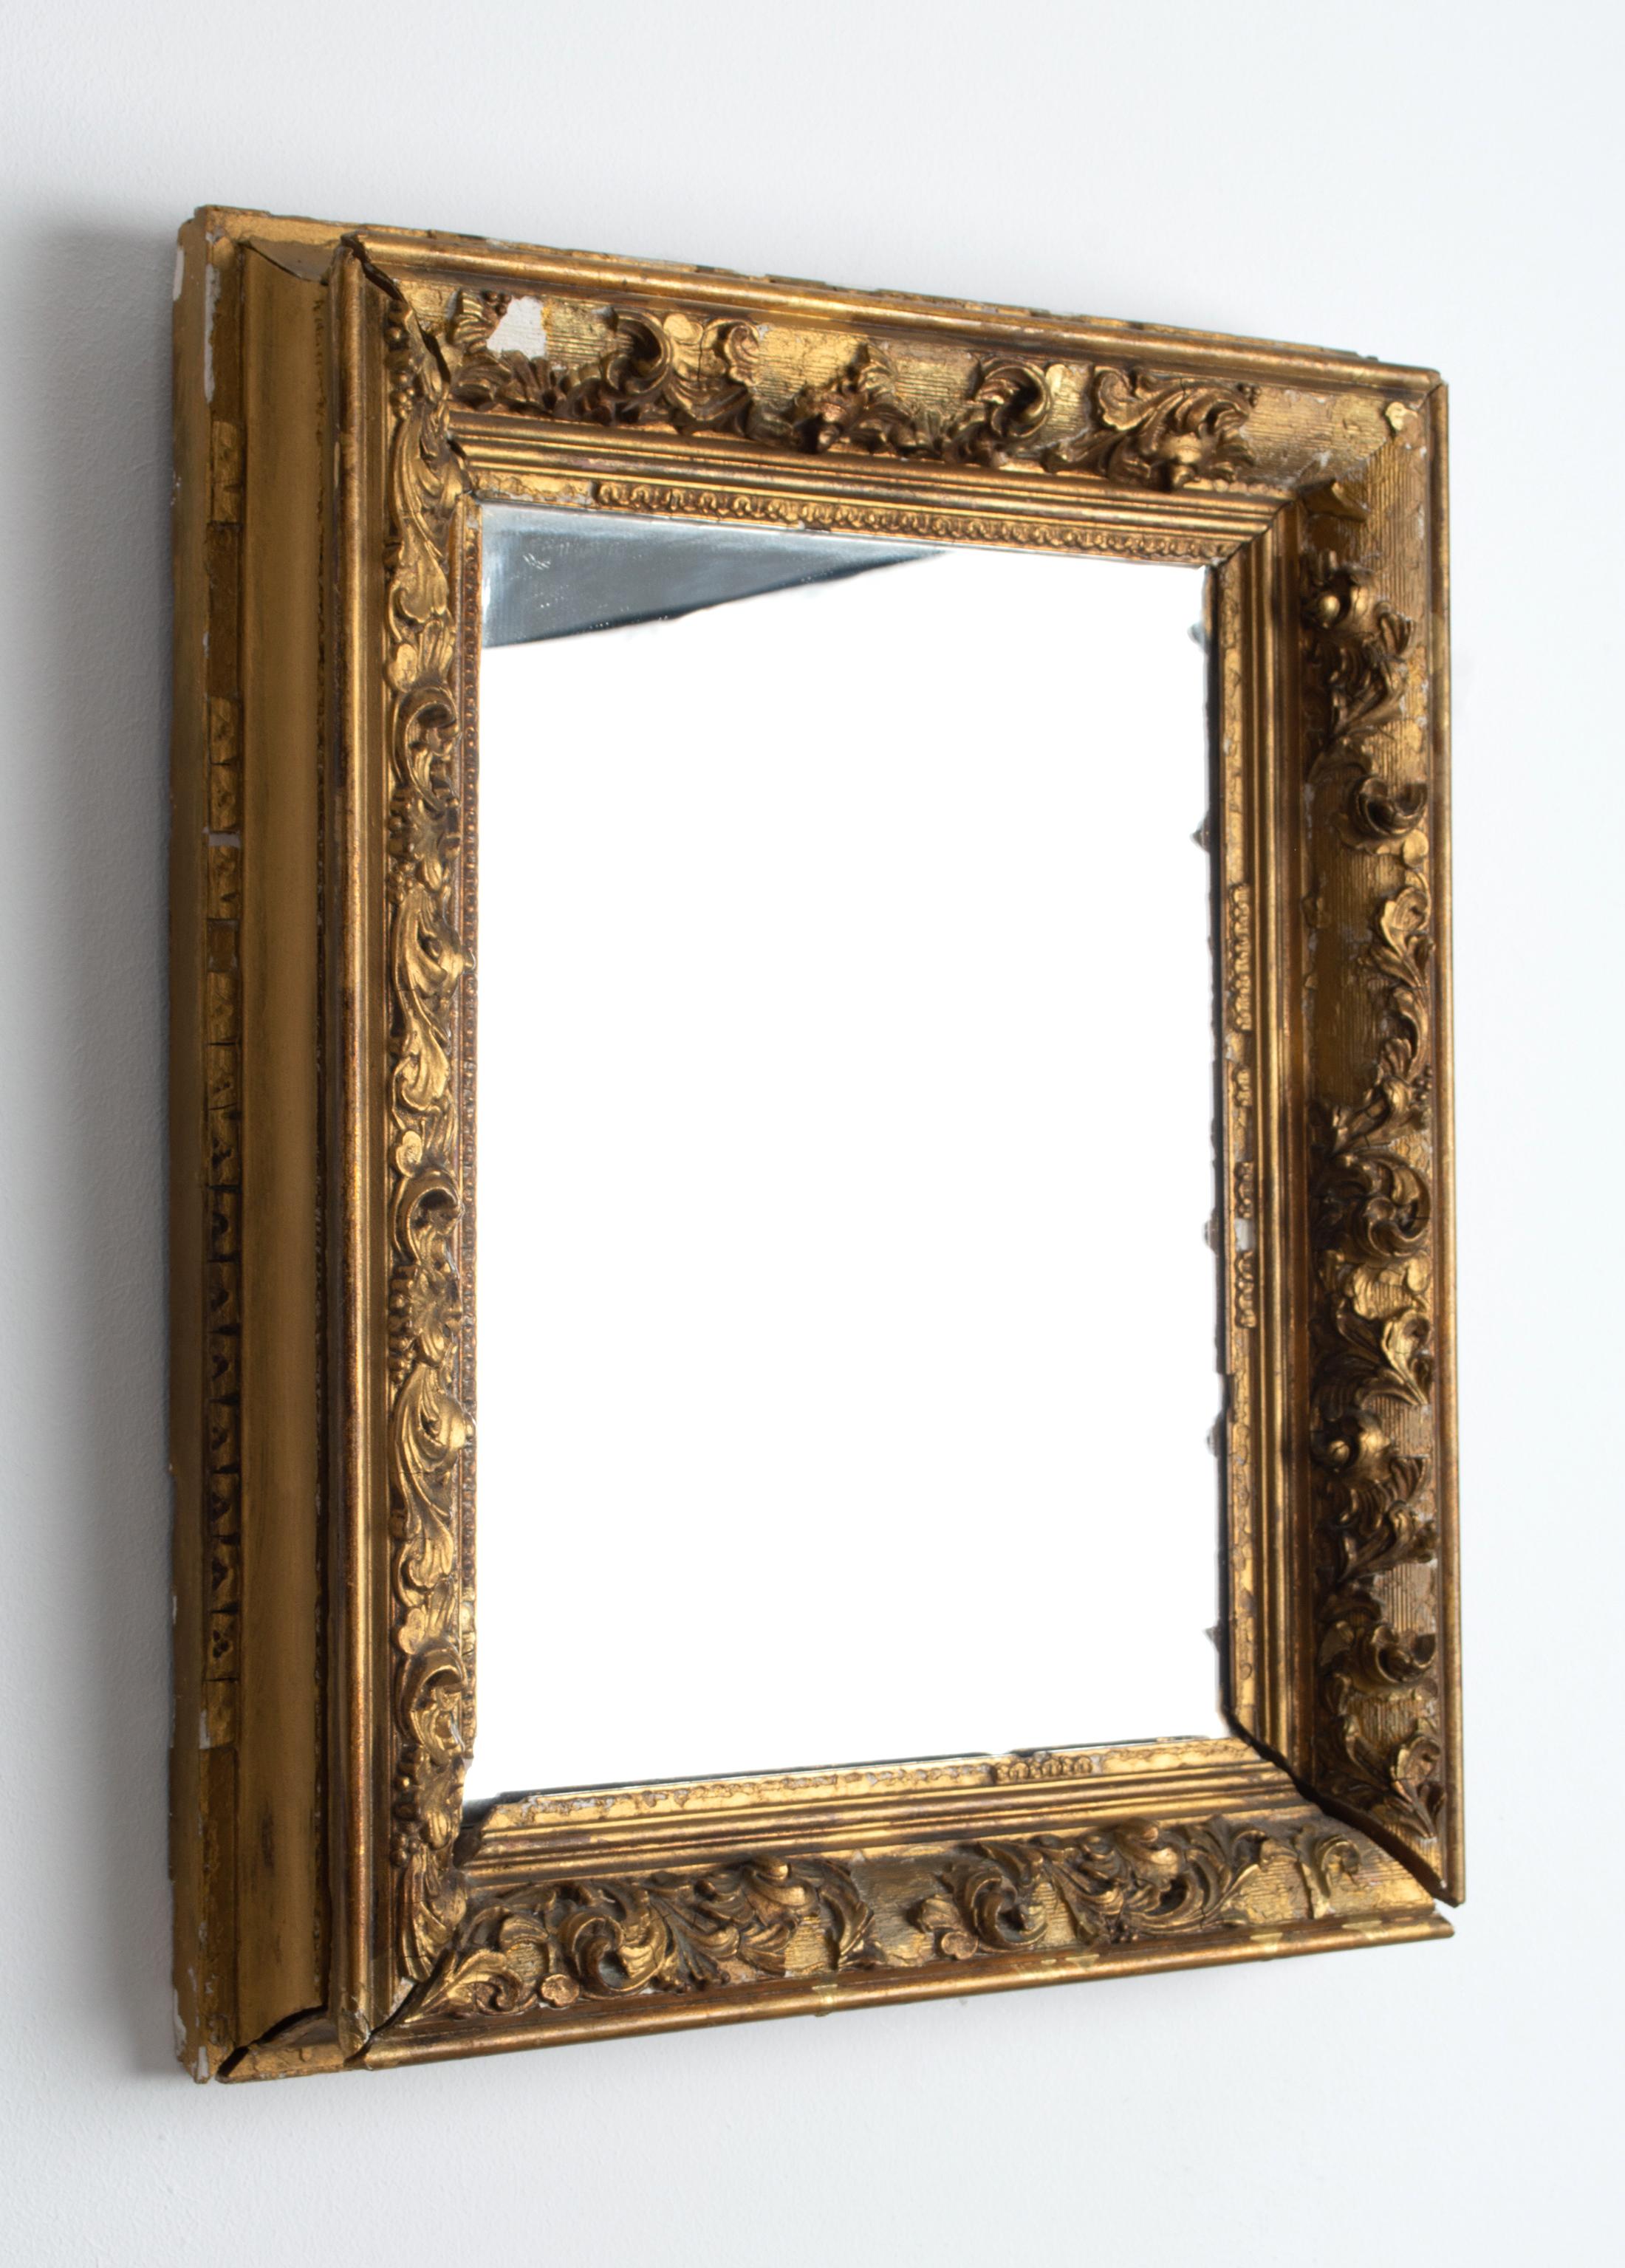 Französisch 19. Jahrhundert Wandspiegel Gesso Distressed Rahmen
Ursprünglich ein Bilderrahmen, jetzt ein Spiegel. Der Spiegel kann entfernt werden, um ein Gemälde wieder einzurahmen.

Starke Beschädigungen und Verluste am vergoldeten Rahmen.